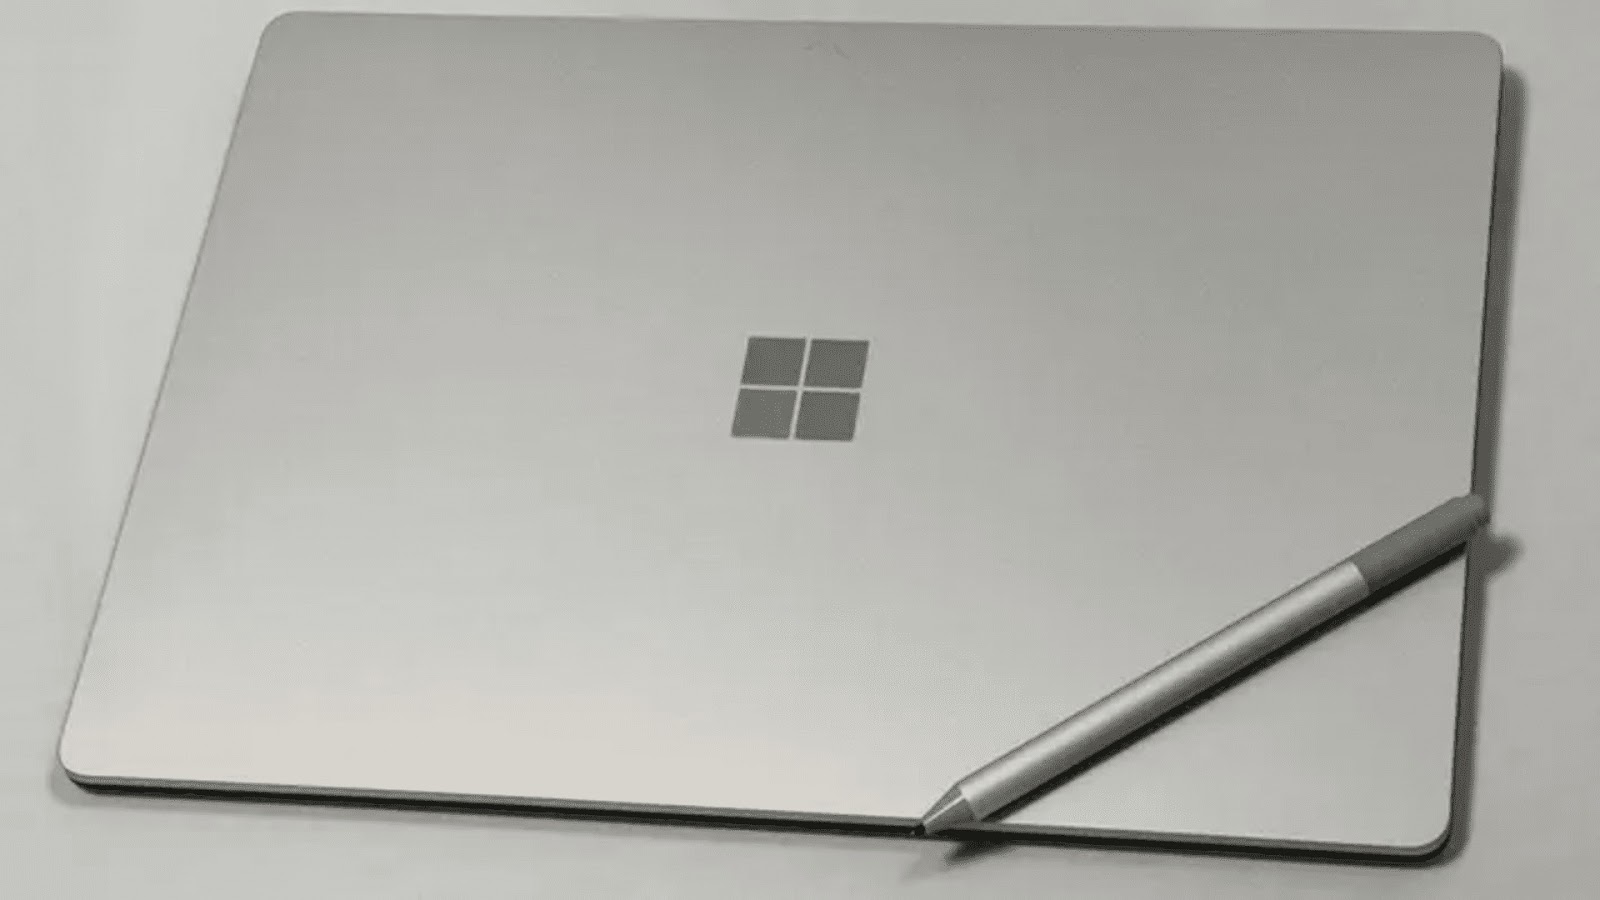 [Review] Đánh giá Surface Laptop 4 - Sau 2 năm ra mắt liệu có còn đáng mua? 16